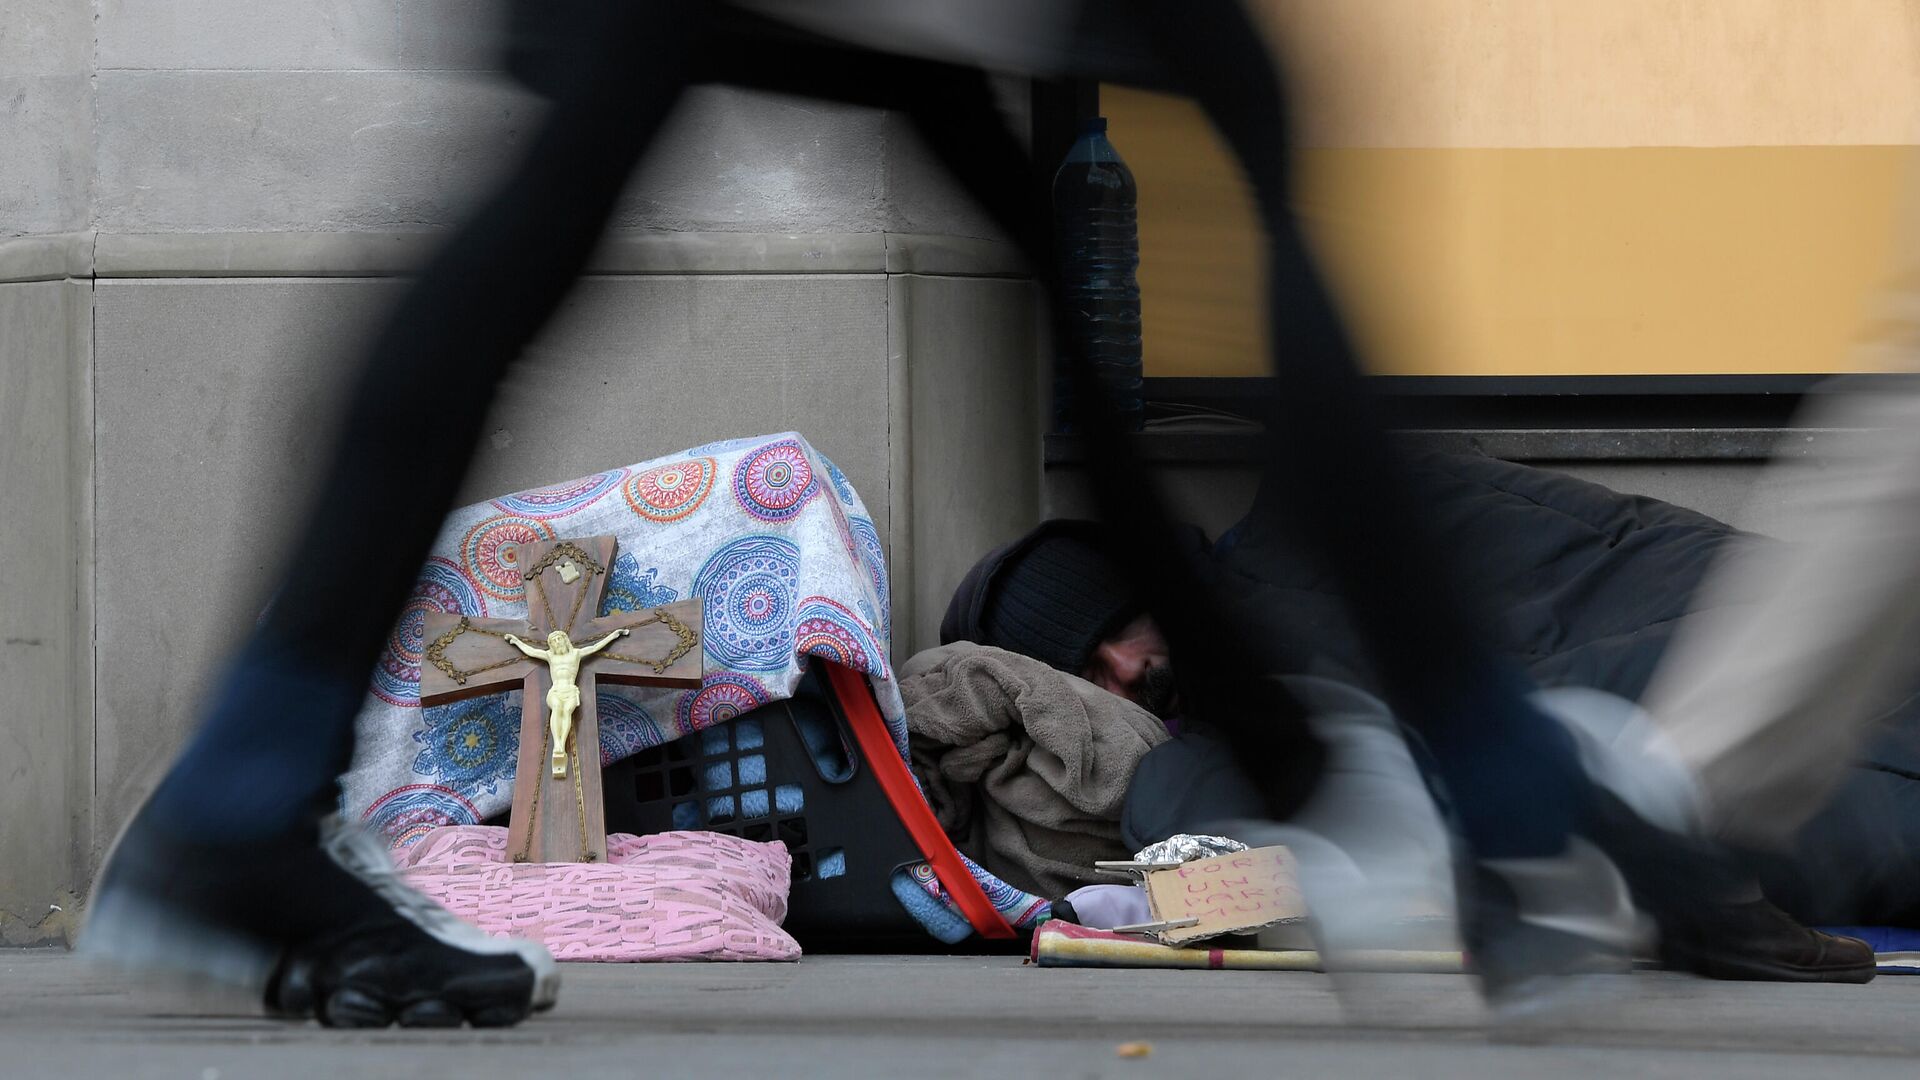 Бездомный на улице Барселоны, Испания - РИА Новости, 1920, 21.01.2020